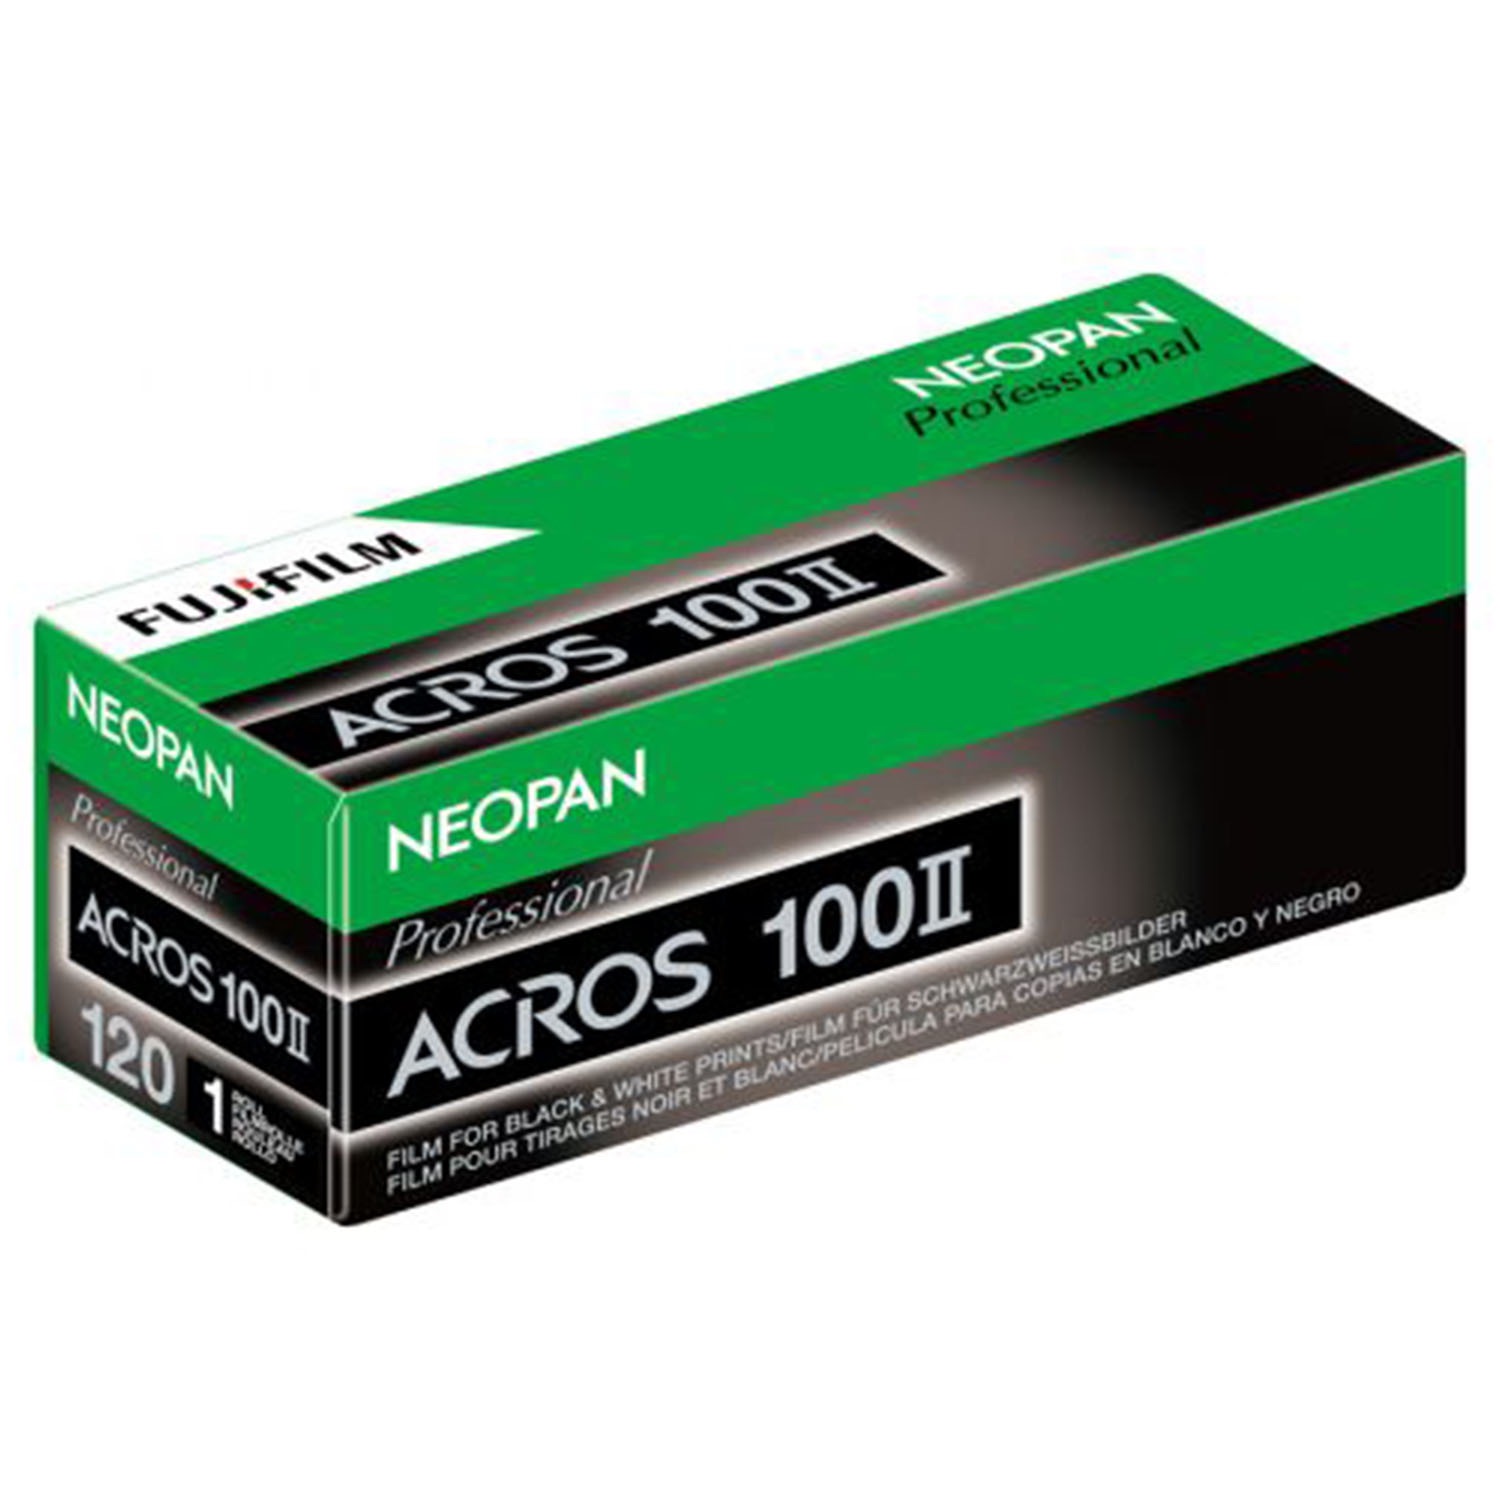 Fujifilm Acros Neopan 100 II - 120